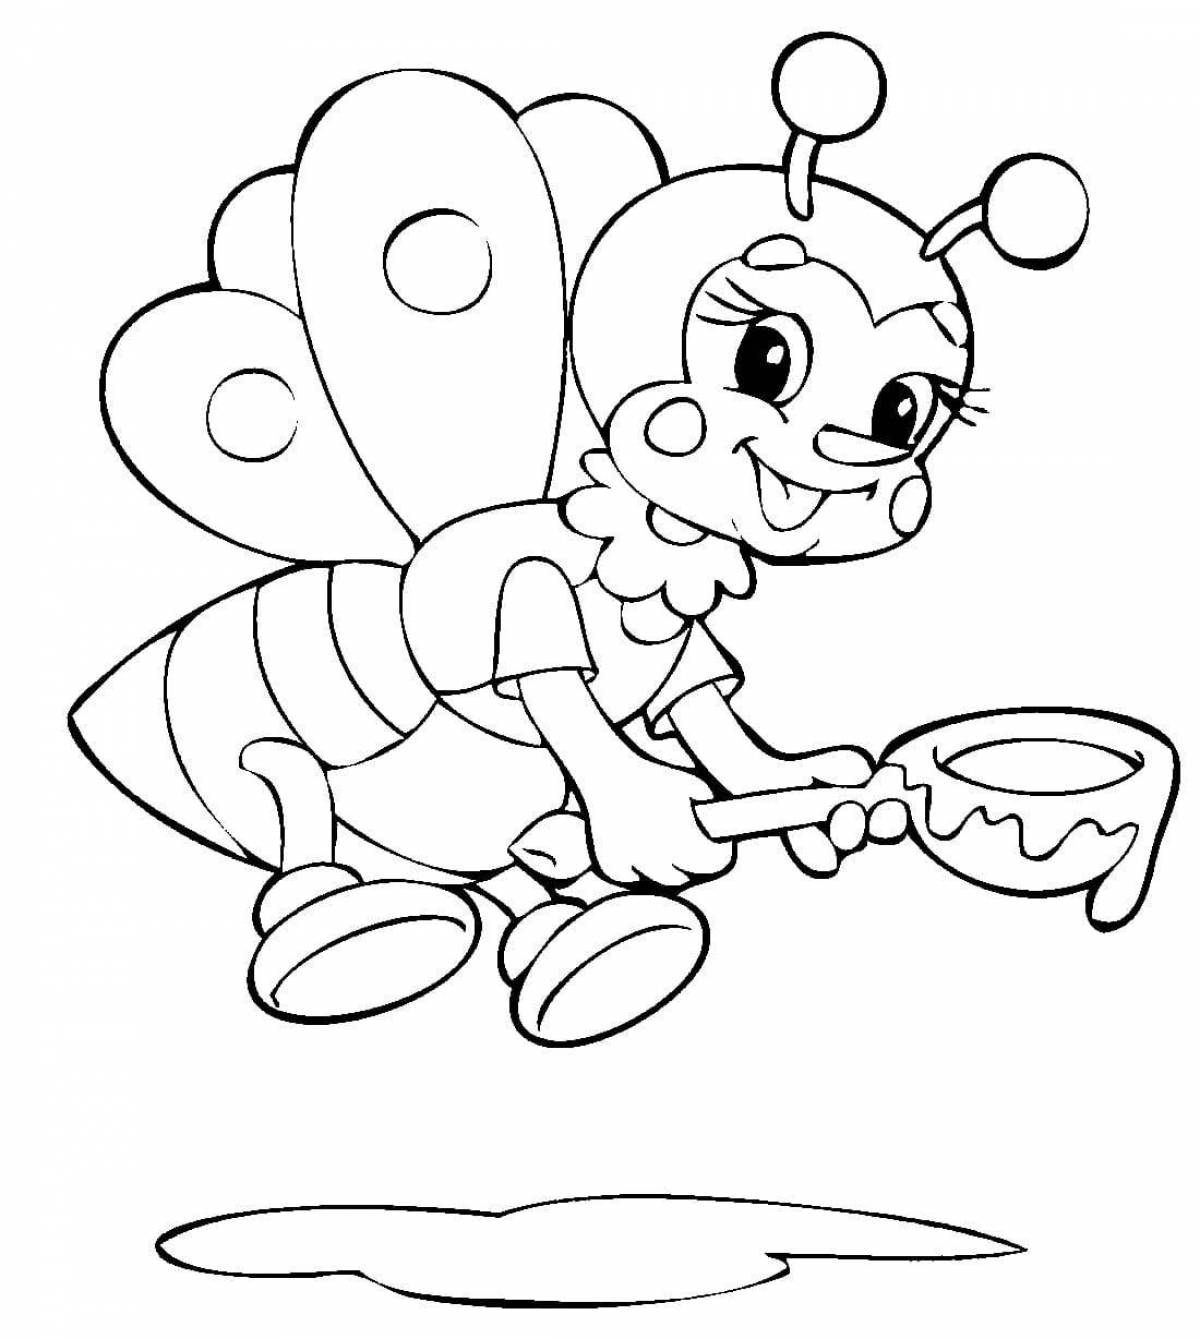 Fun bee coloring book